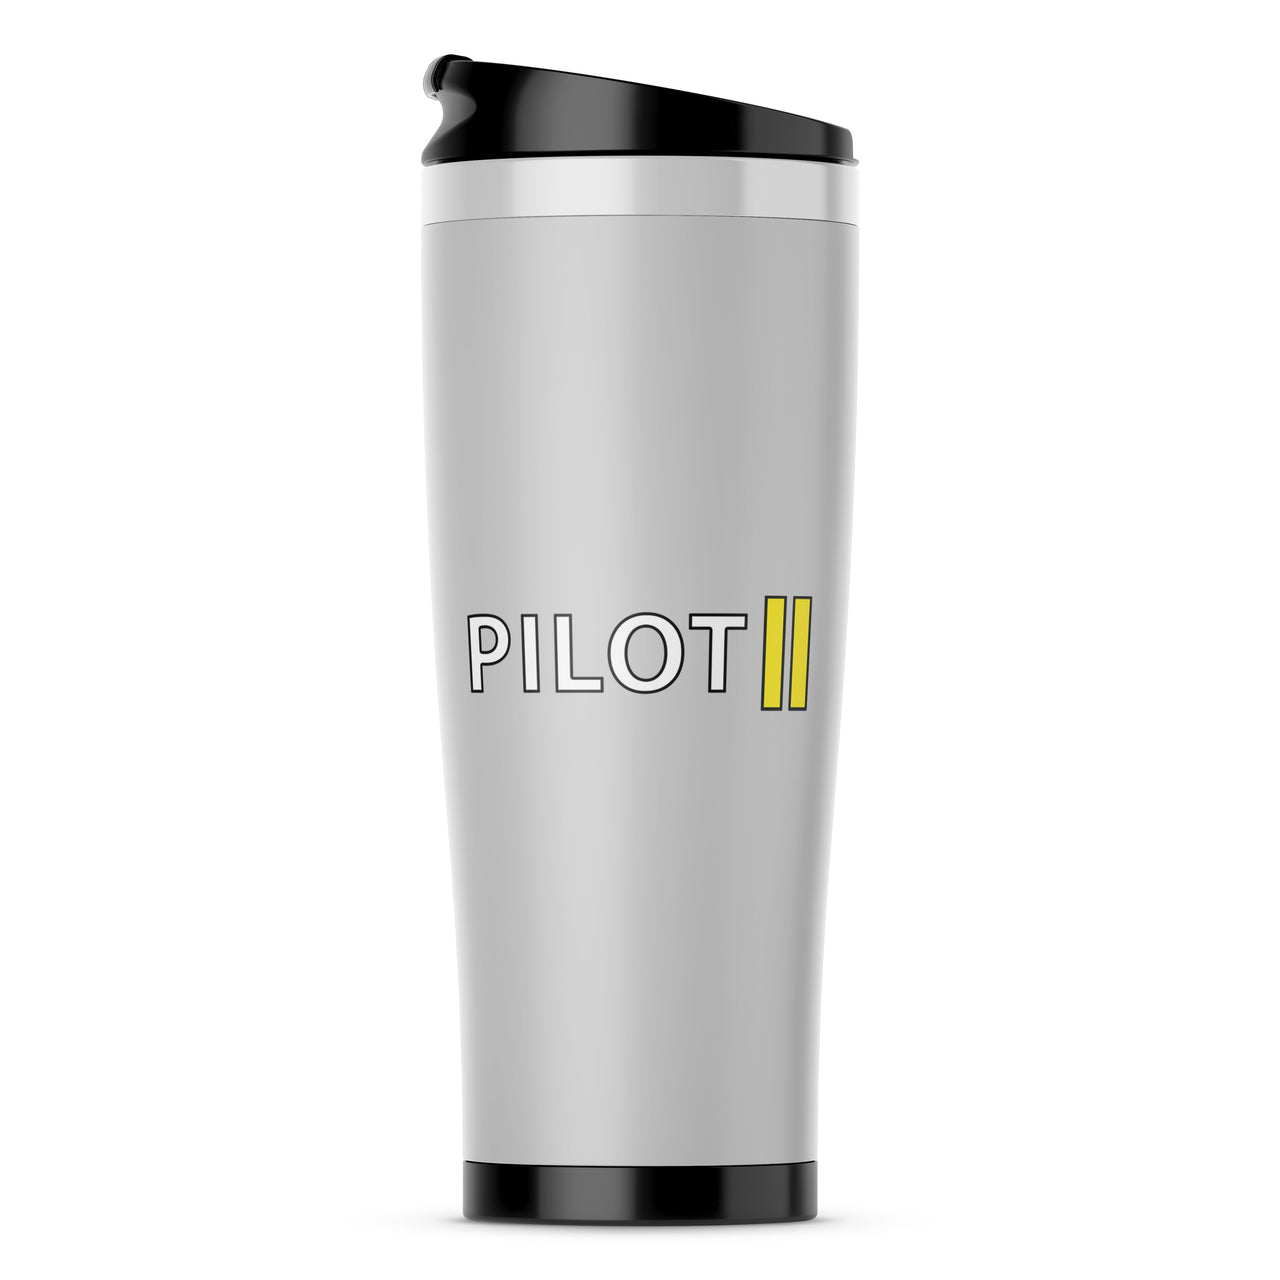 Pilot & Stripes (2 Lines) Designed Travel Mugs